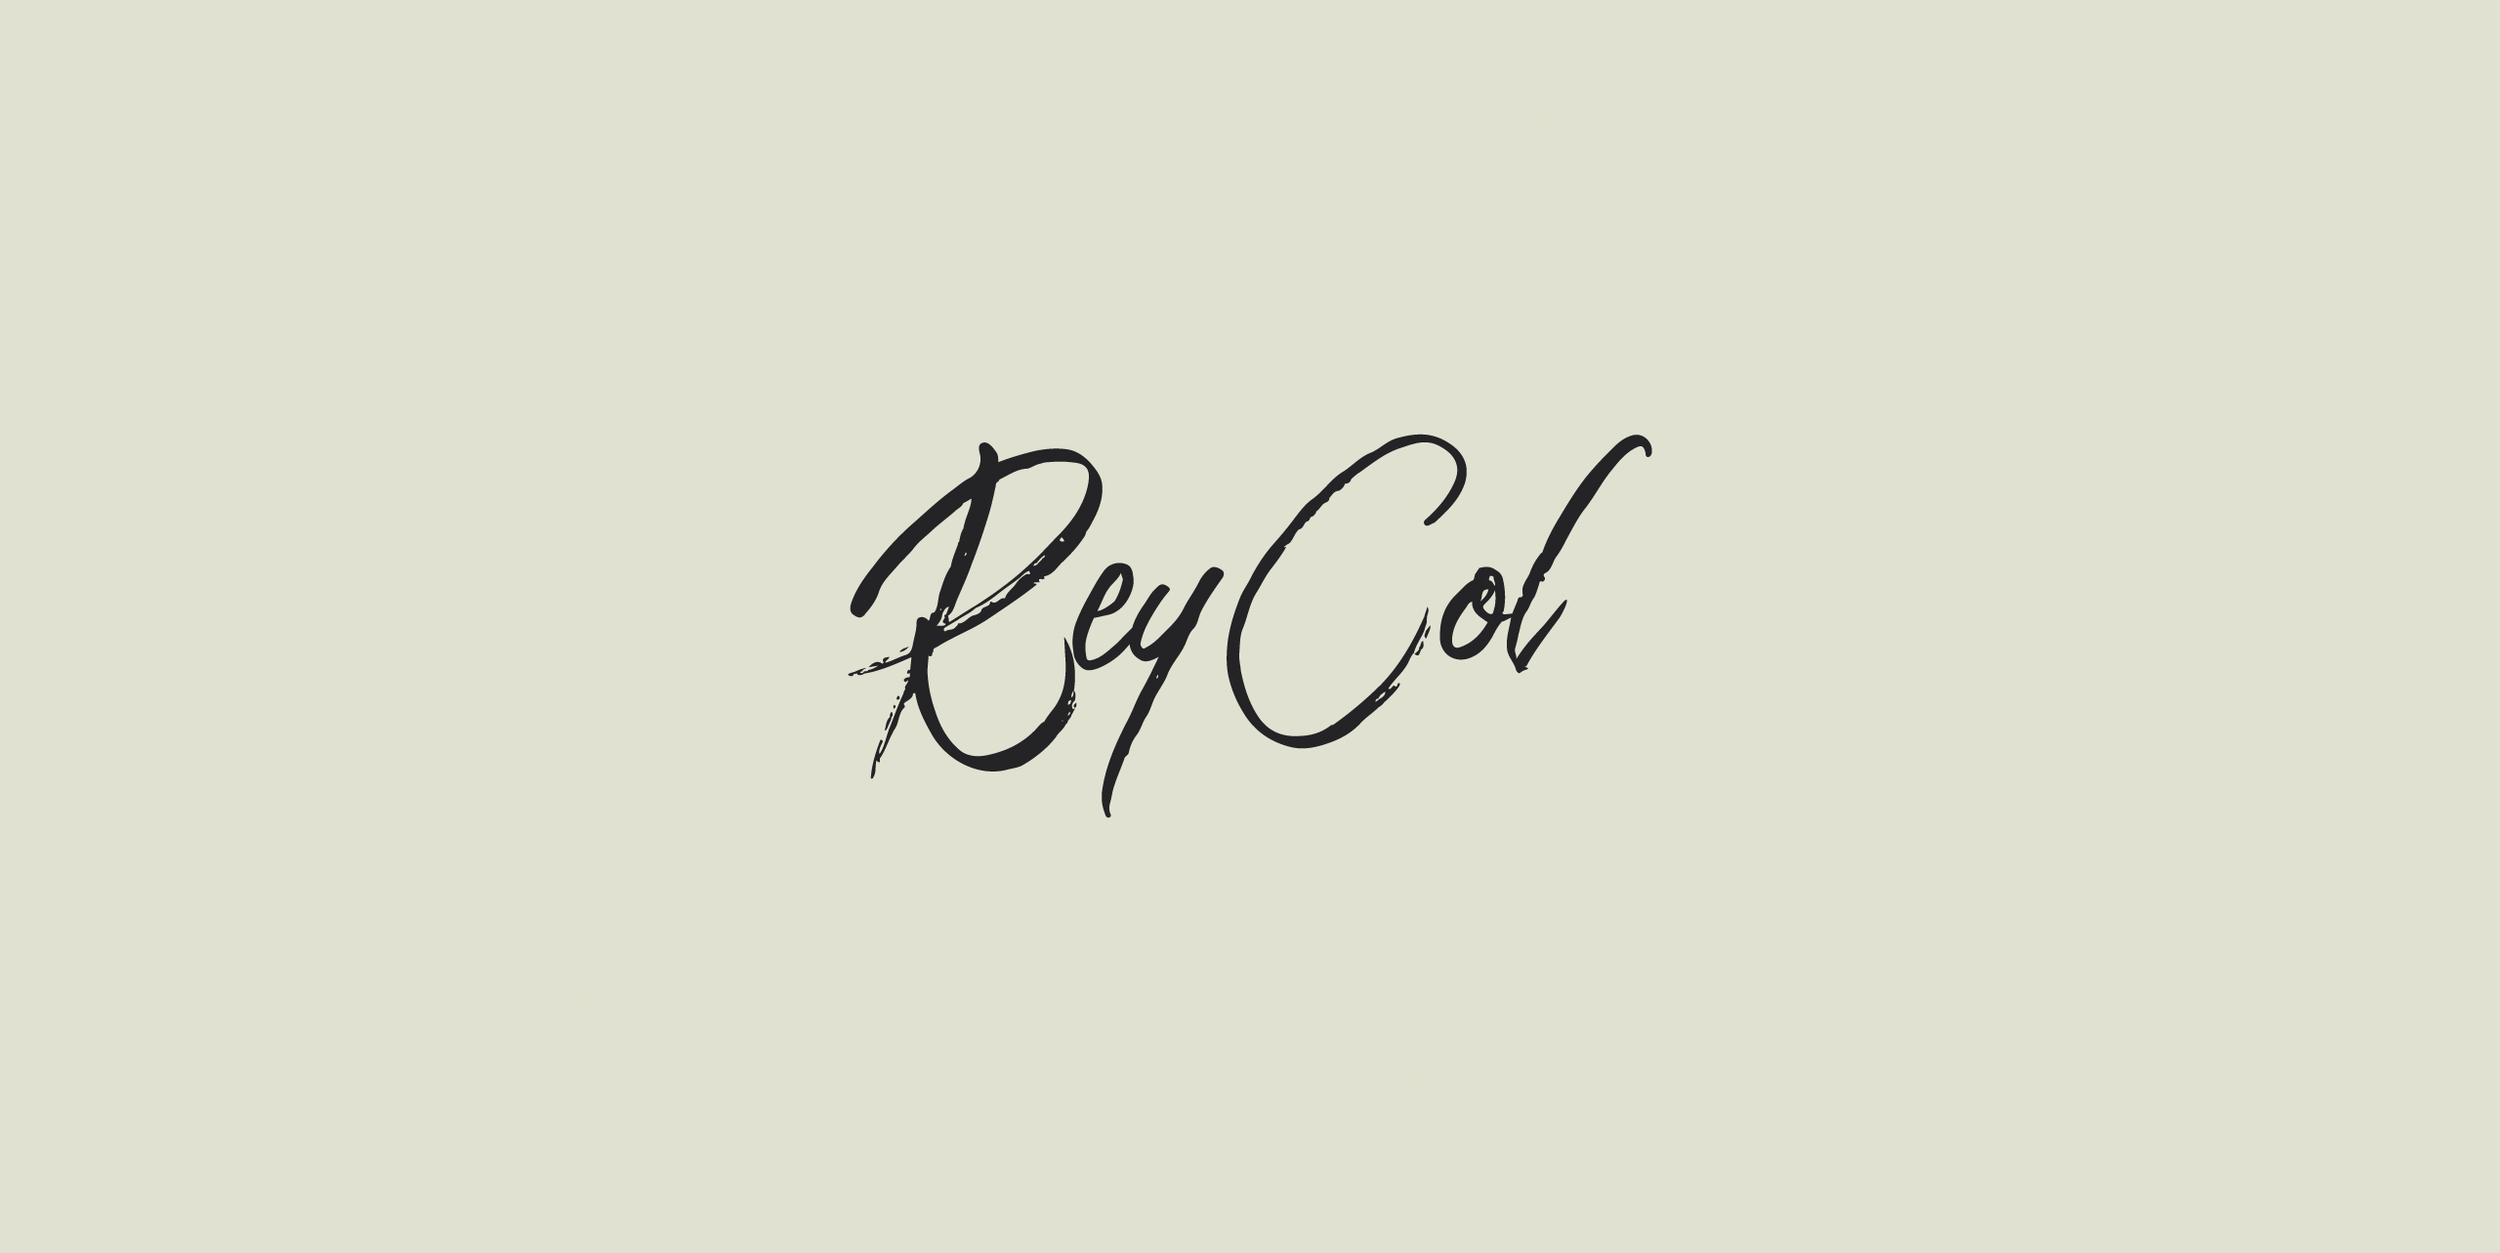 Reycol_Logo.png